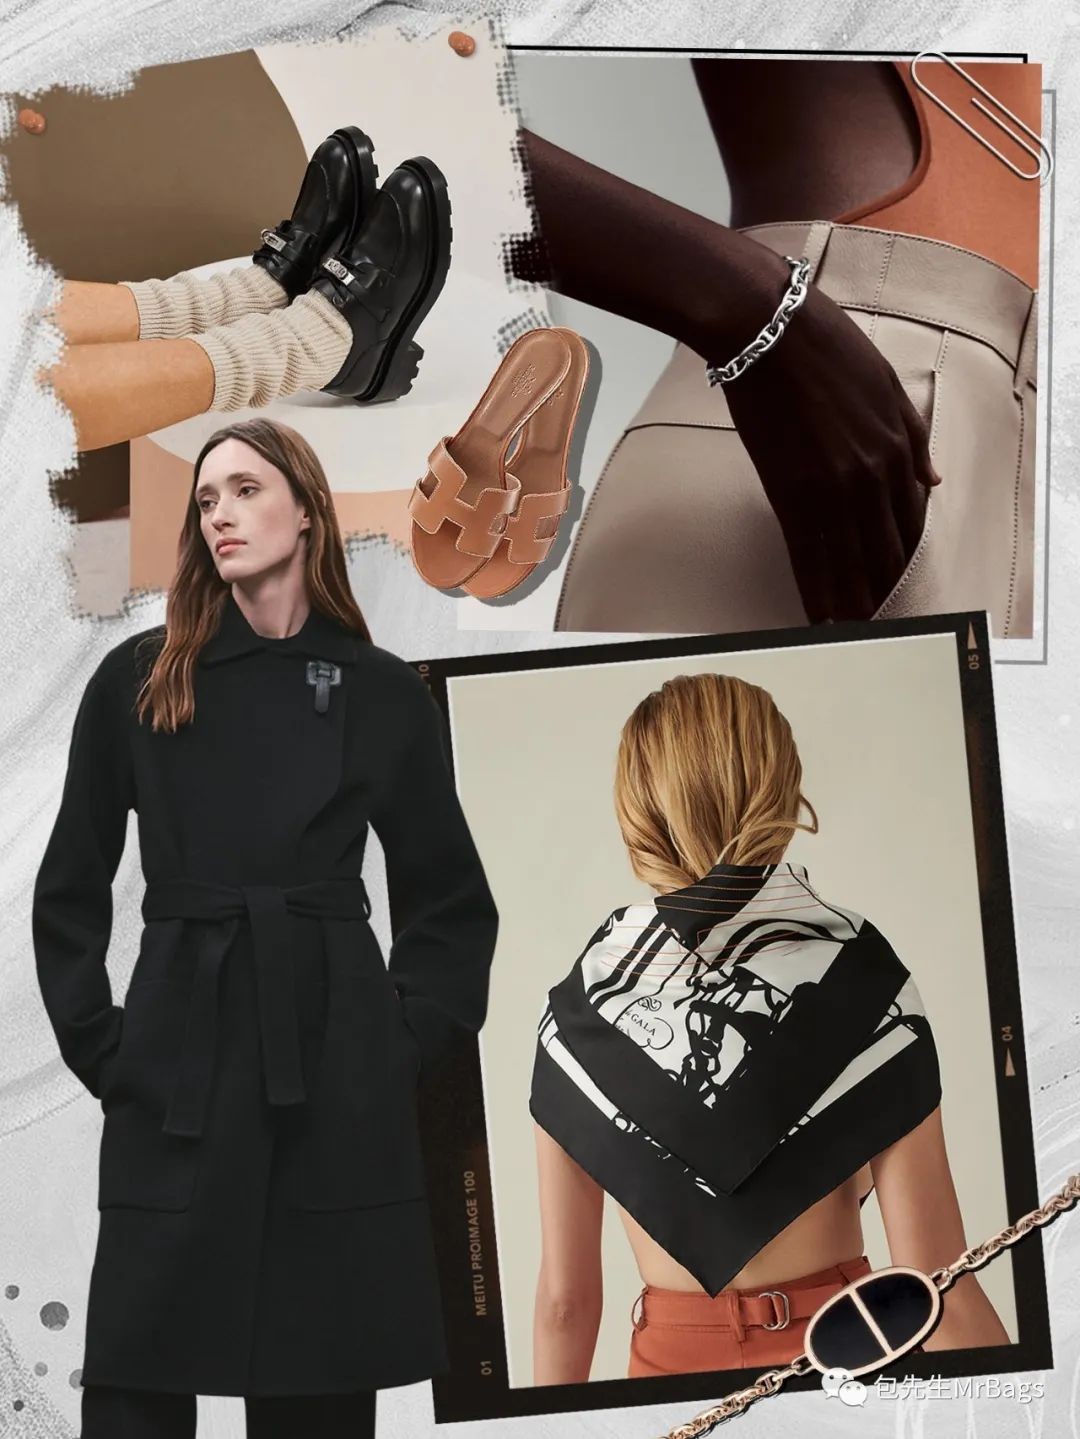 Chanel bags are too expensive, what should I do? (2023 updated)-Magazin online de geanți Louis Vuitton fals de cea mai bună calitate, geantă de designer replica ru